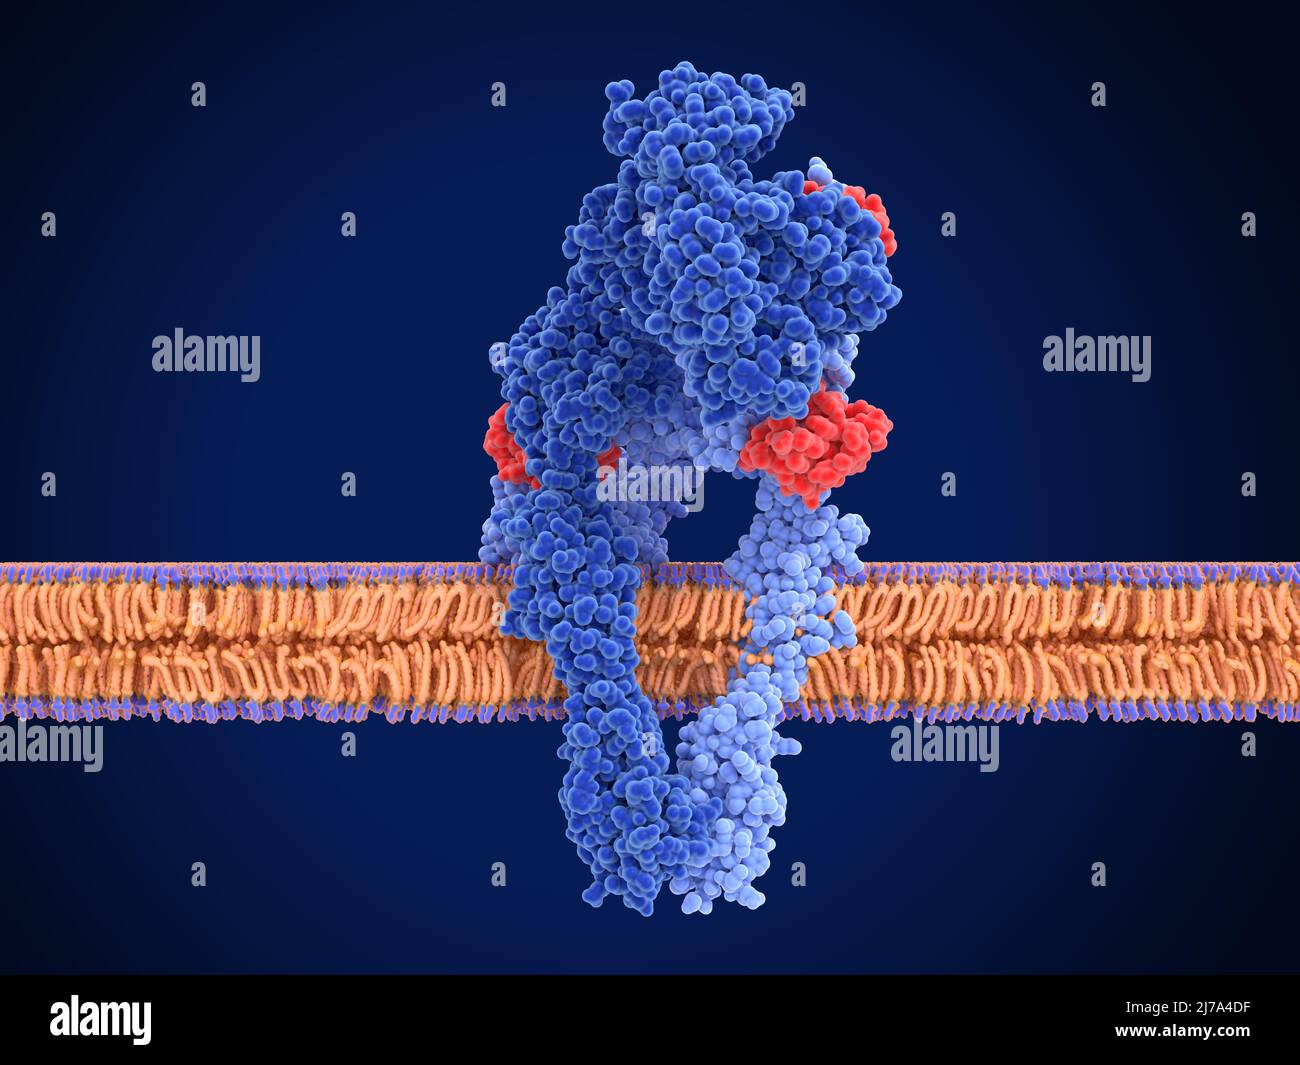 Recettore dell'insulina attivo, illustrazione Foto Stock